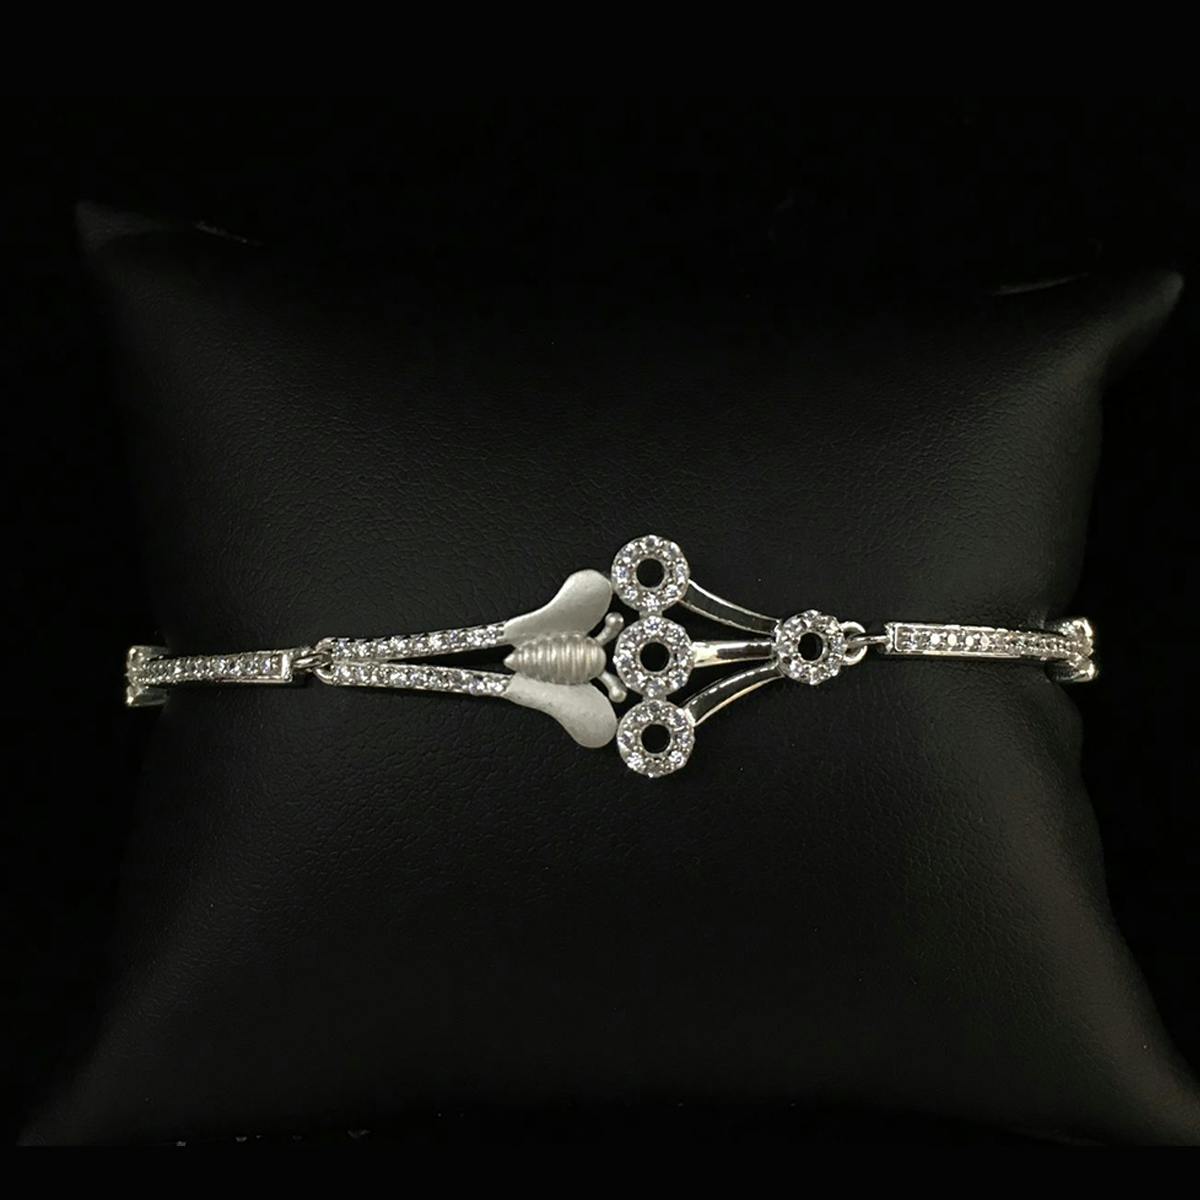 Enchanted Elegance silver bracelet